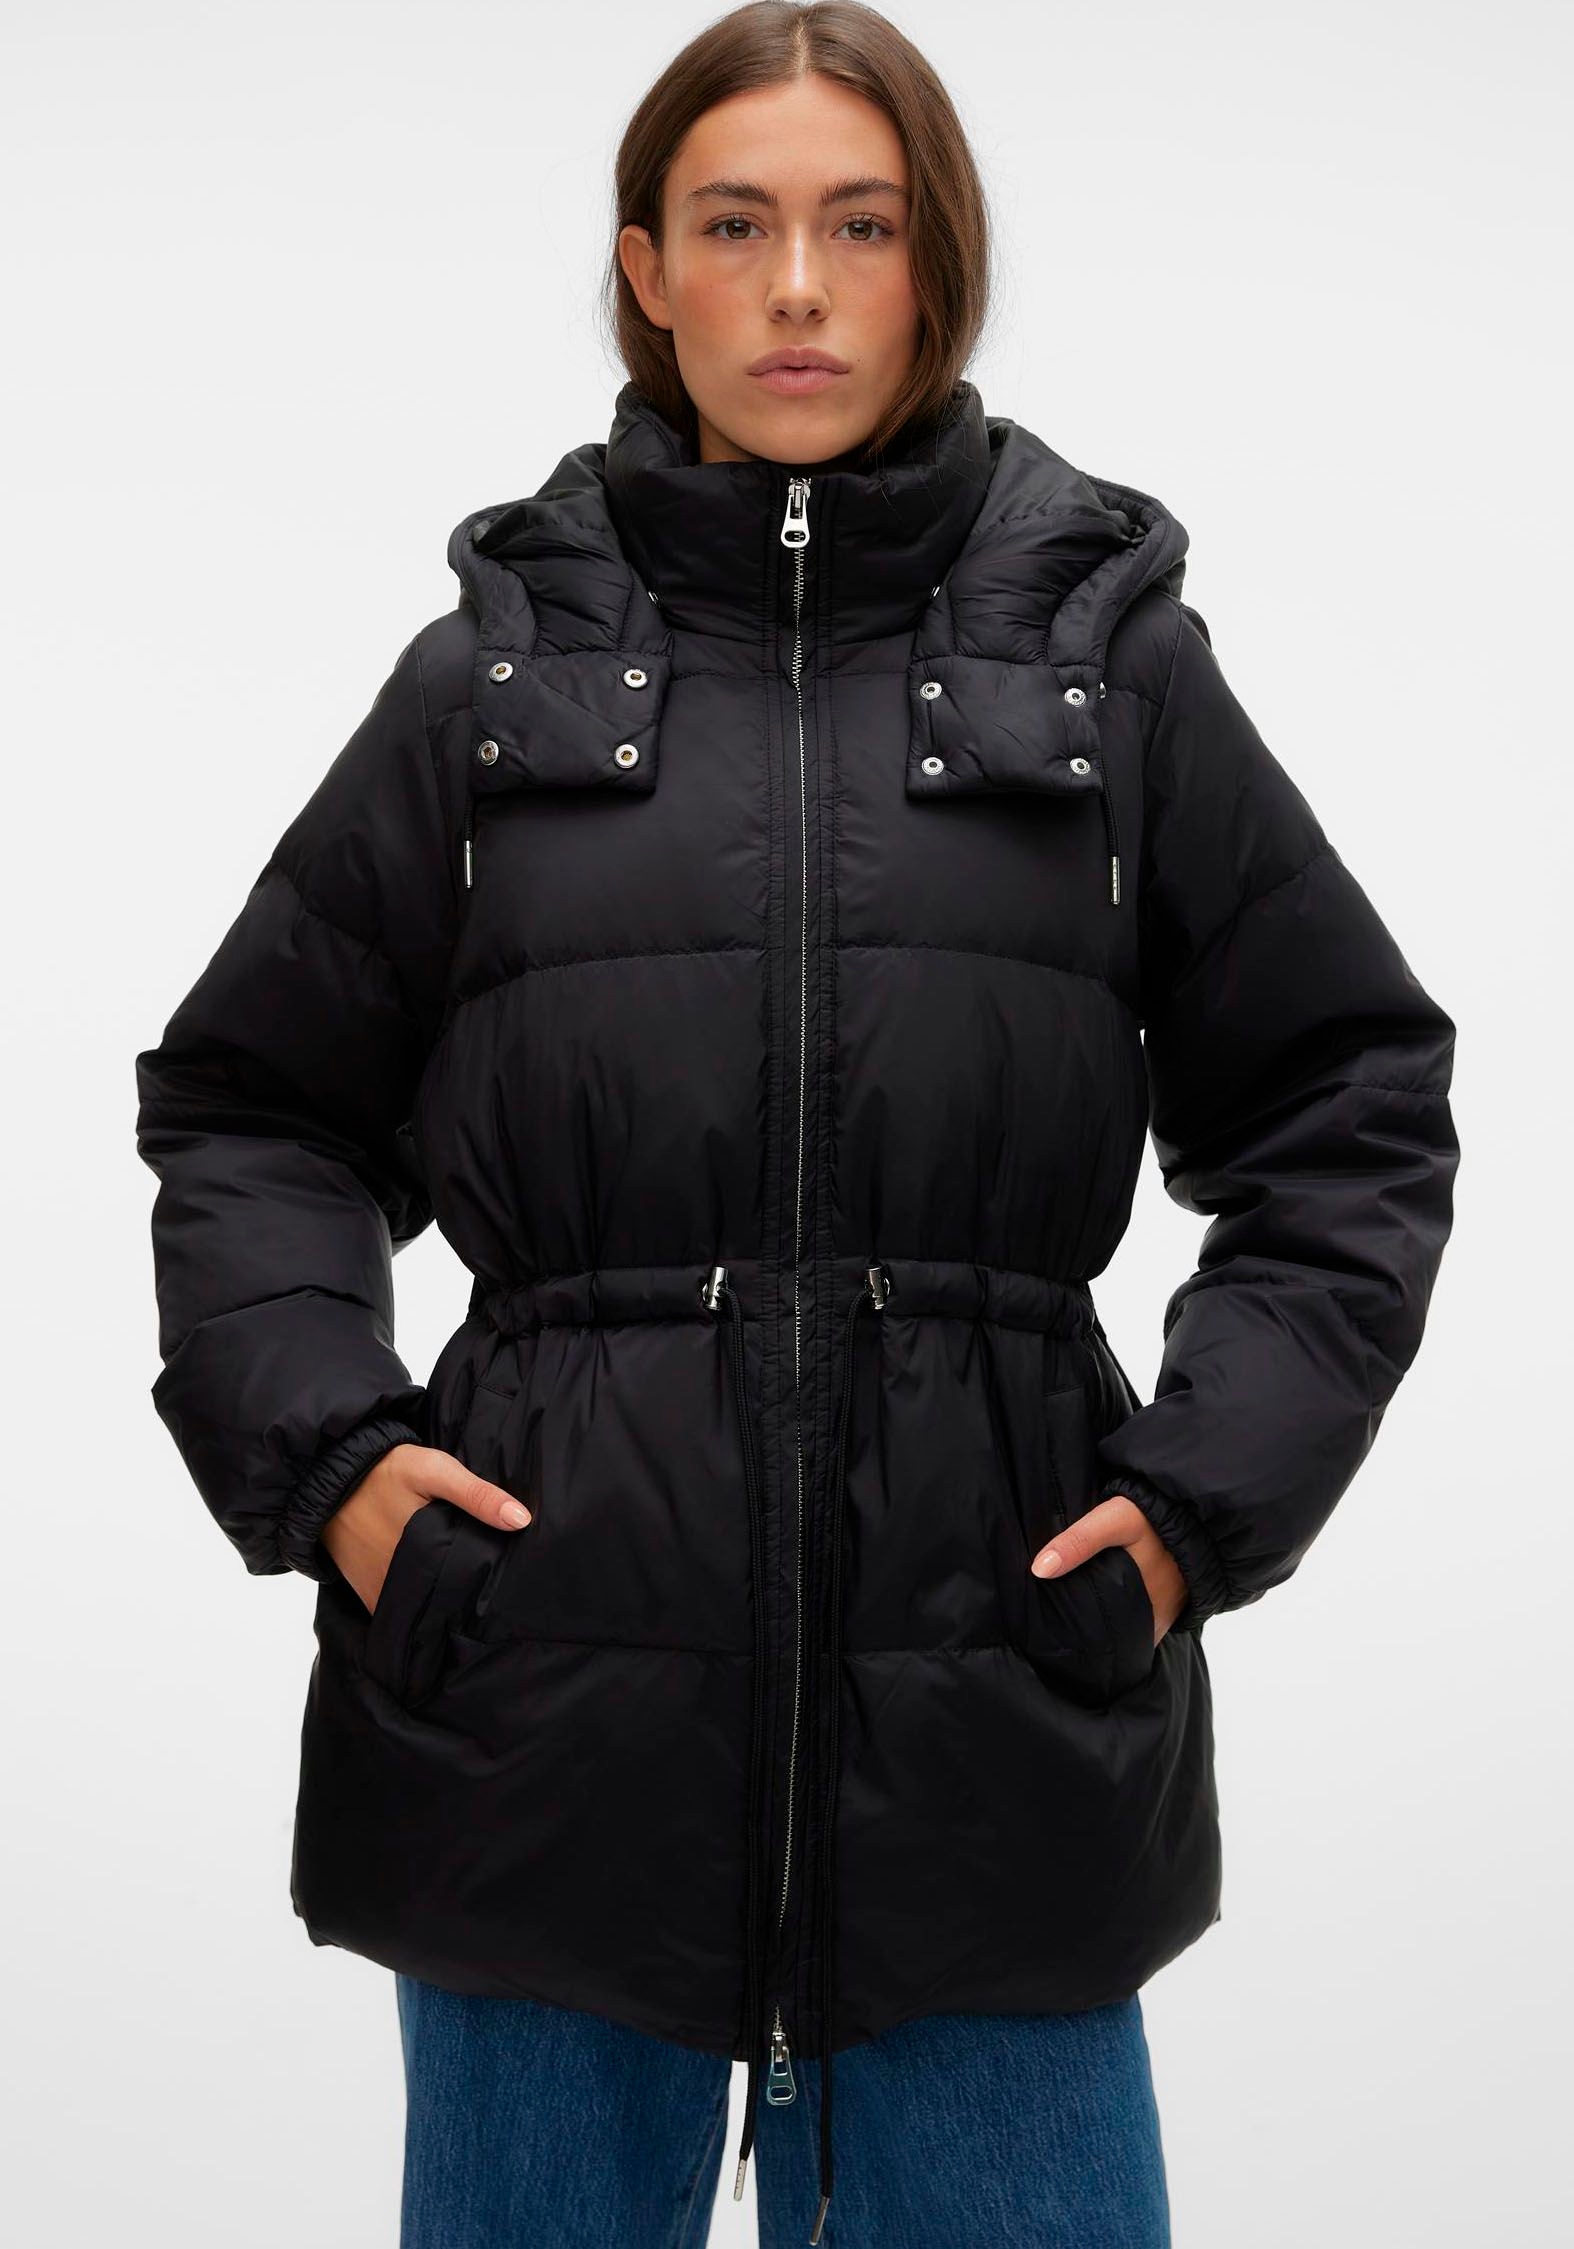 Veromoda Jacken für Damen ☆ kaufen günstig online